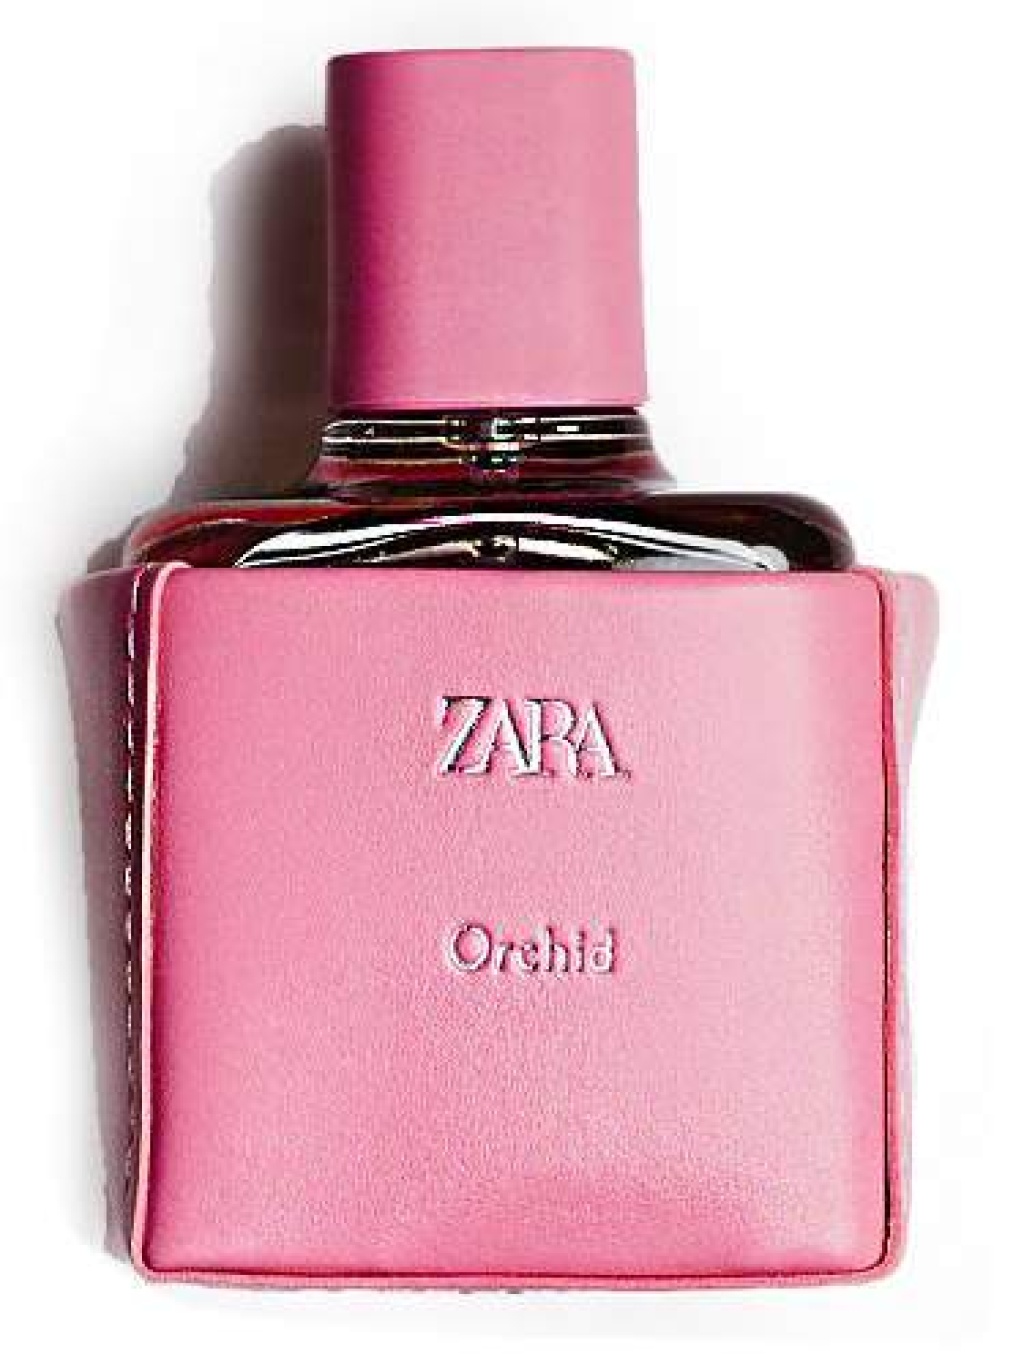 Zara orchid